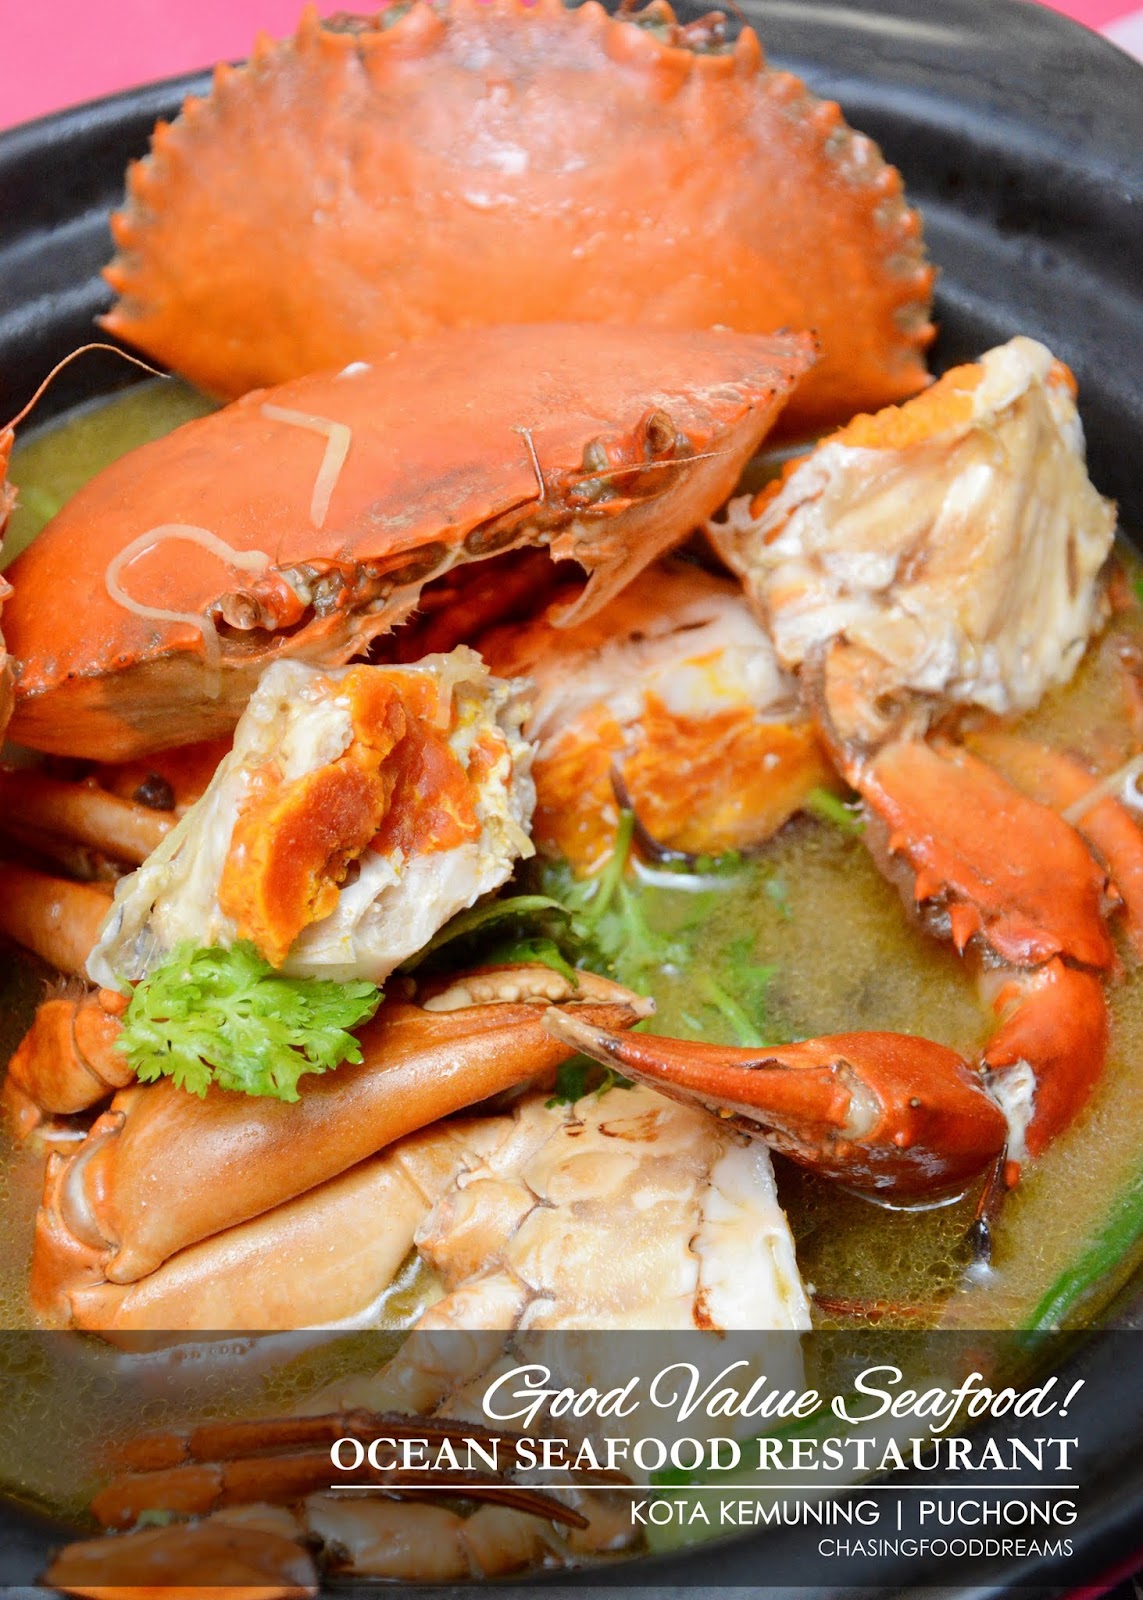 CHASING FOOD DREAMS: Seafood Galore at Ocean Seafood Restaurant, Kota Kemuning